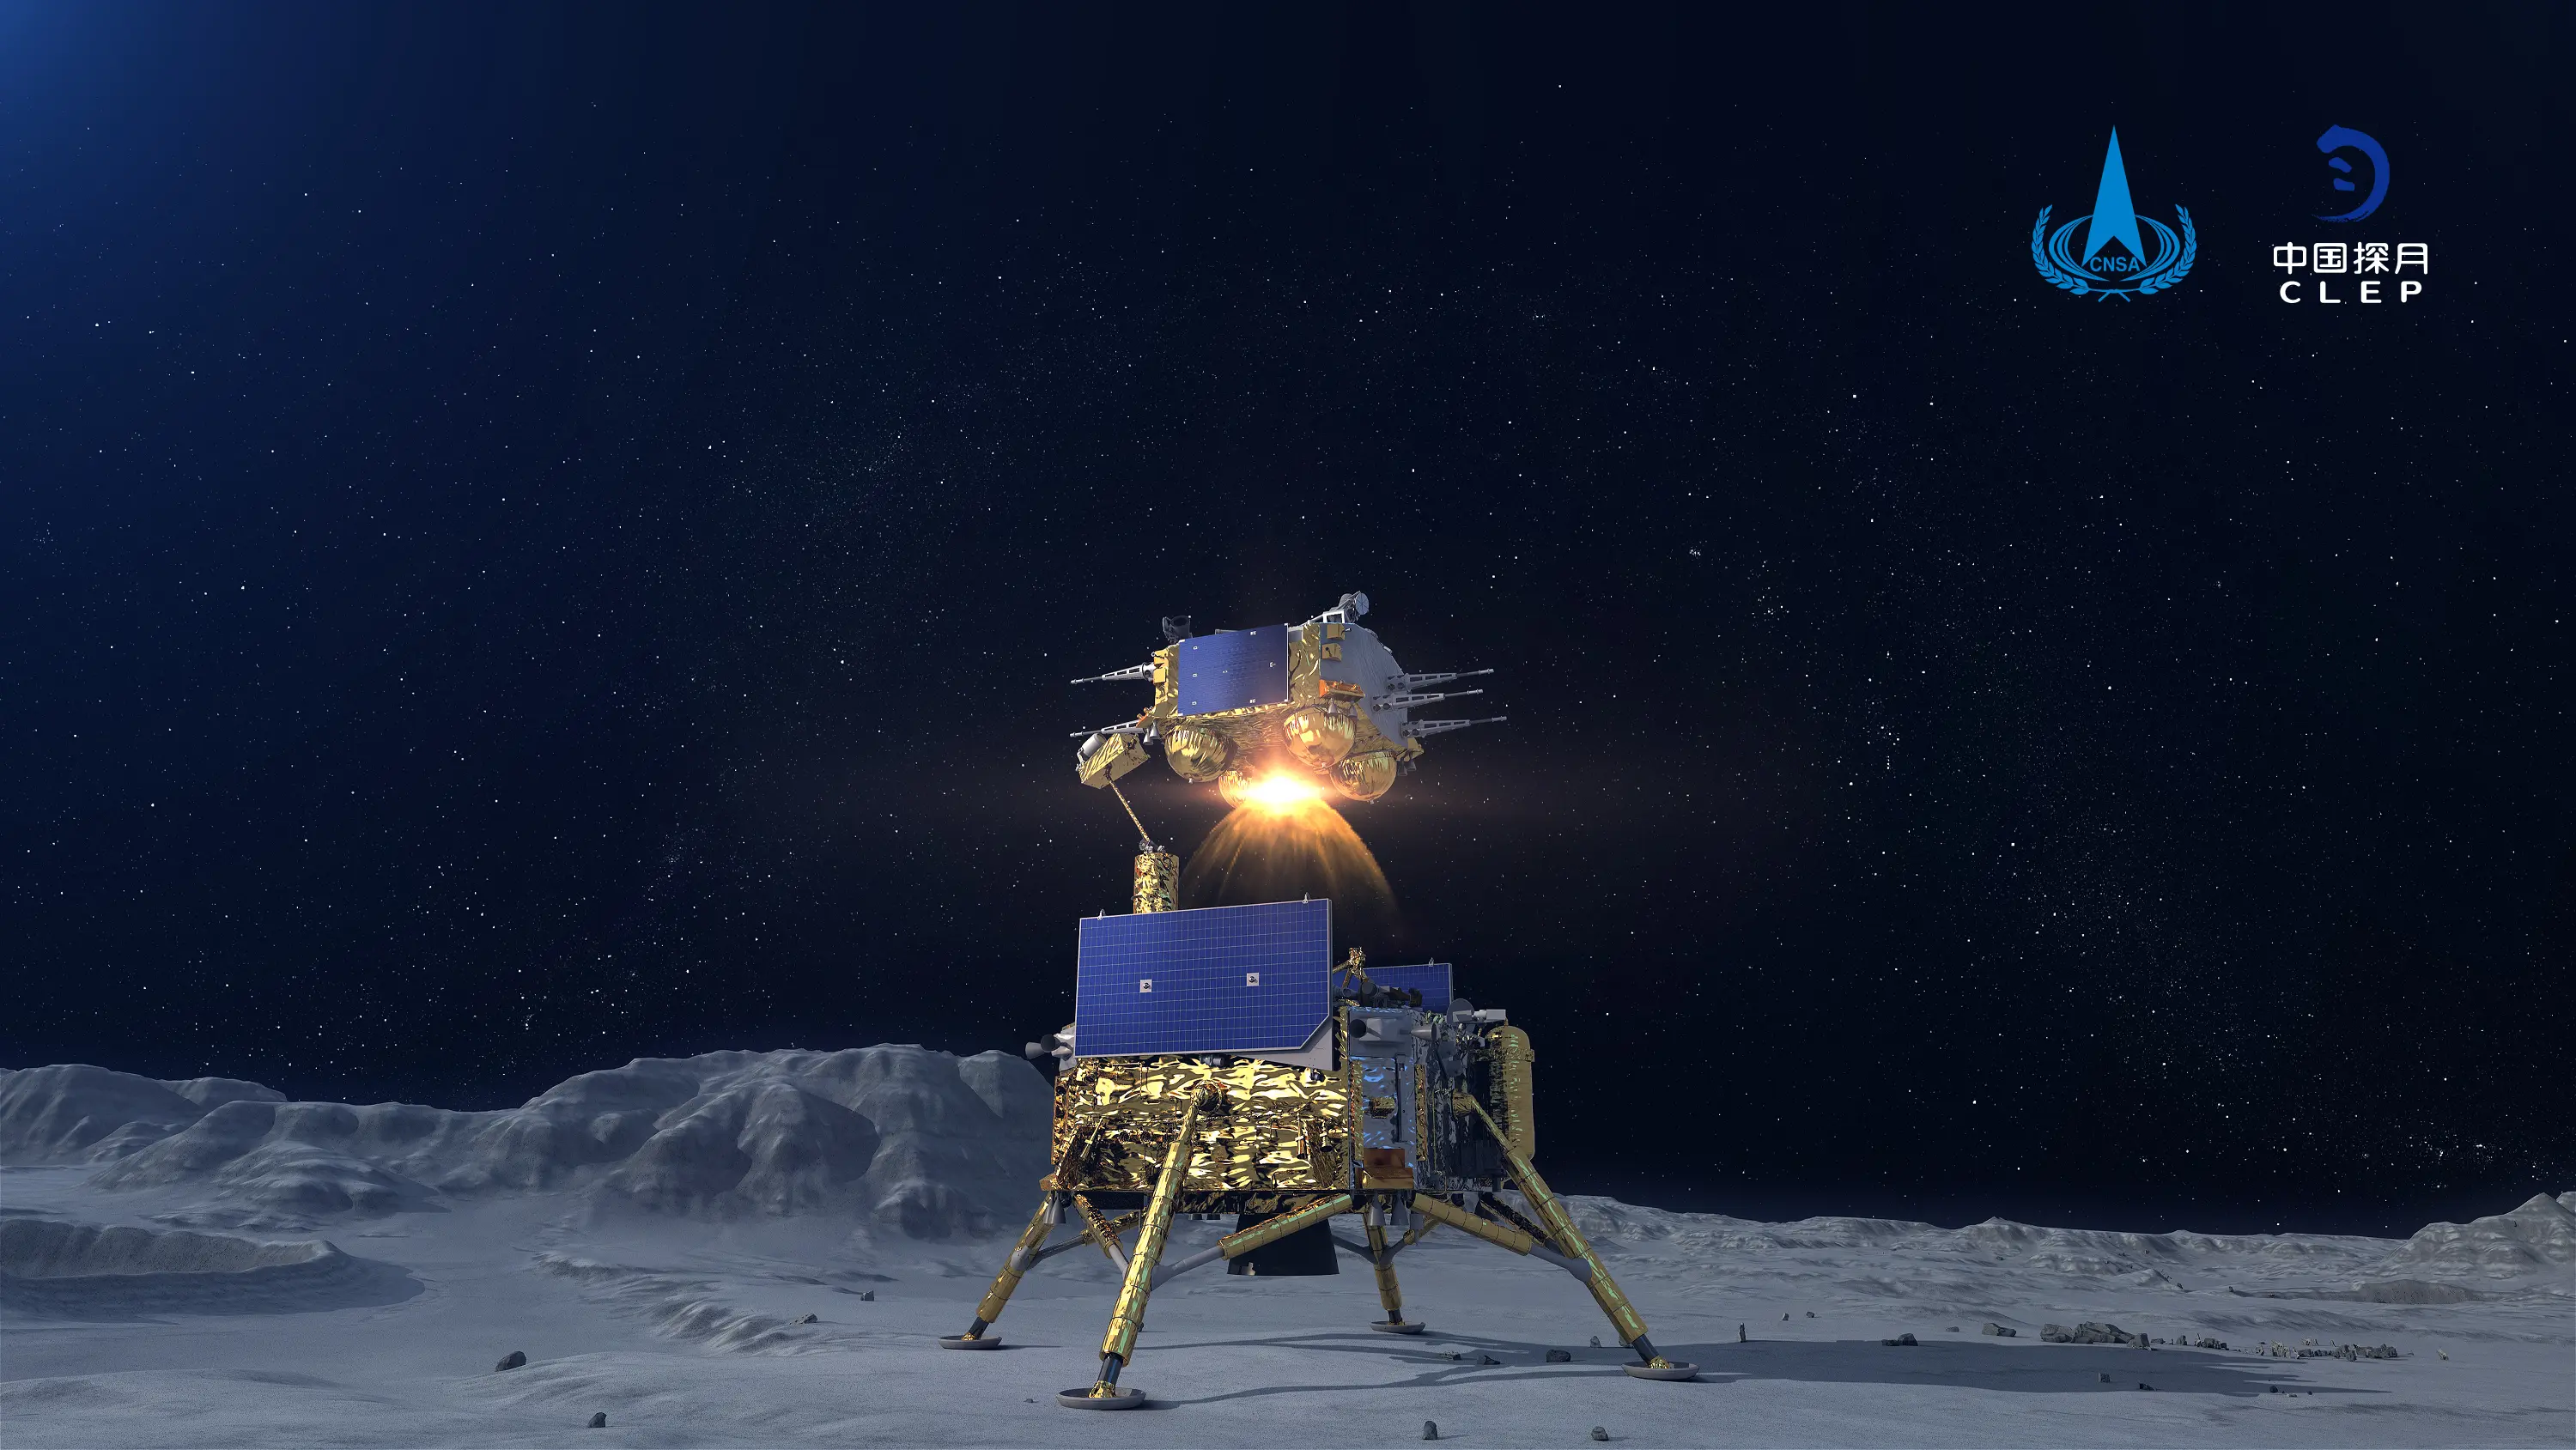 嫦娥五号上升器携带月球土壤样本进入预定轨道